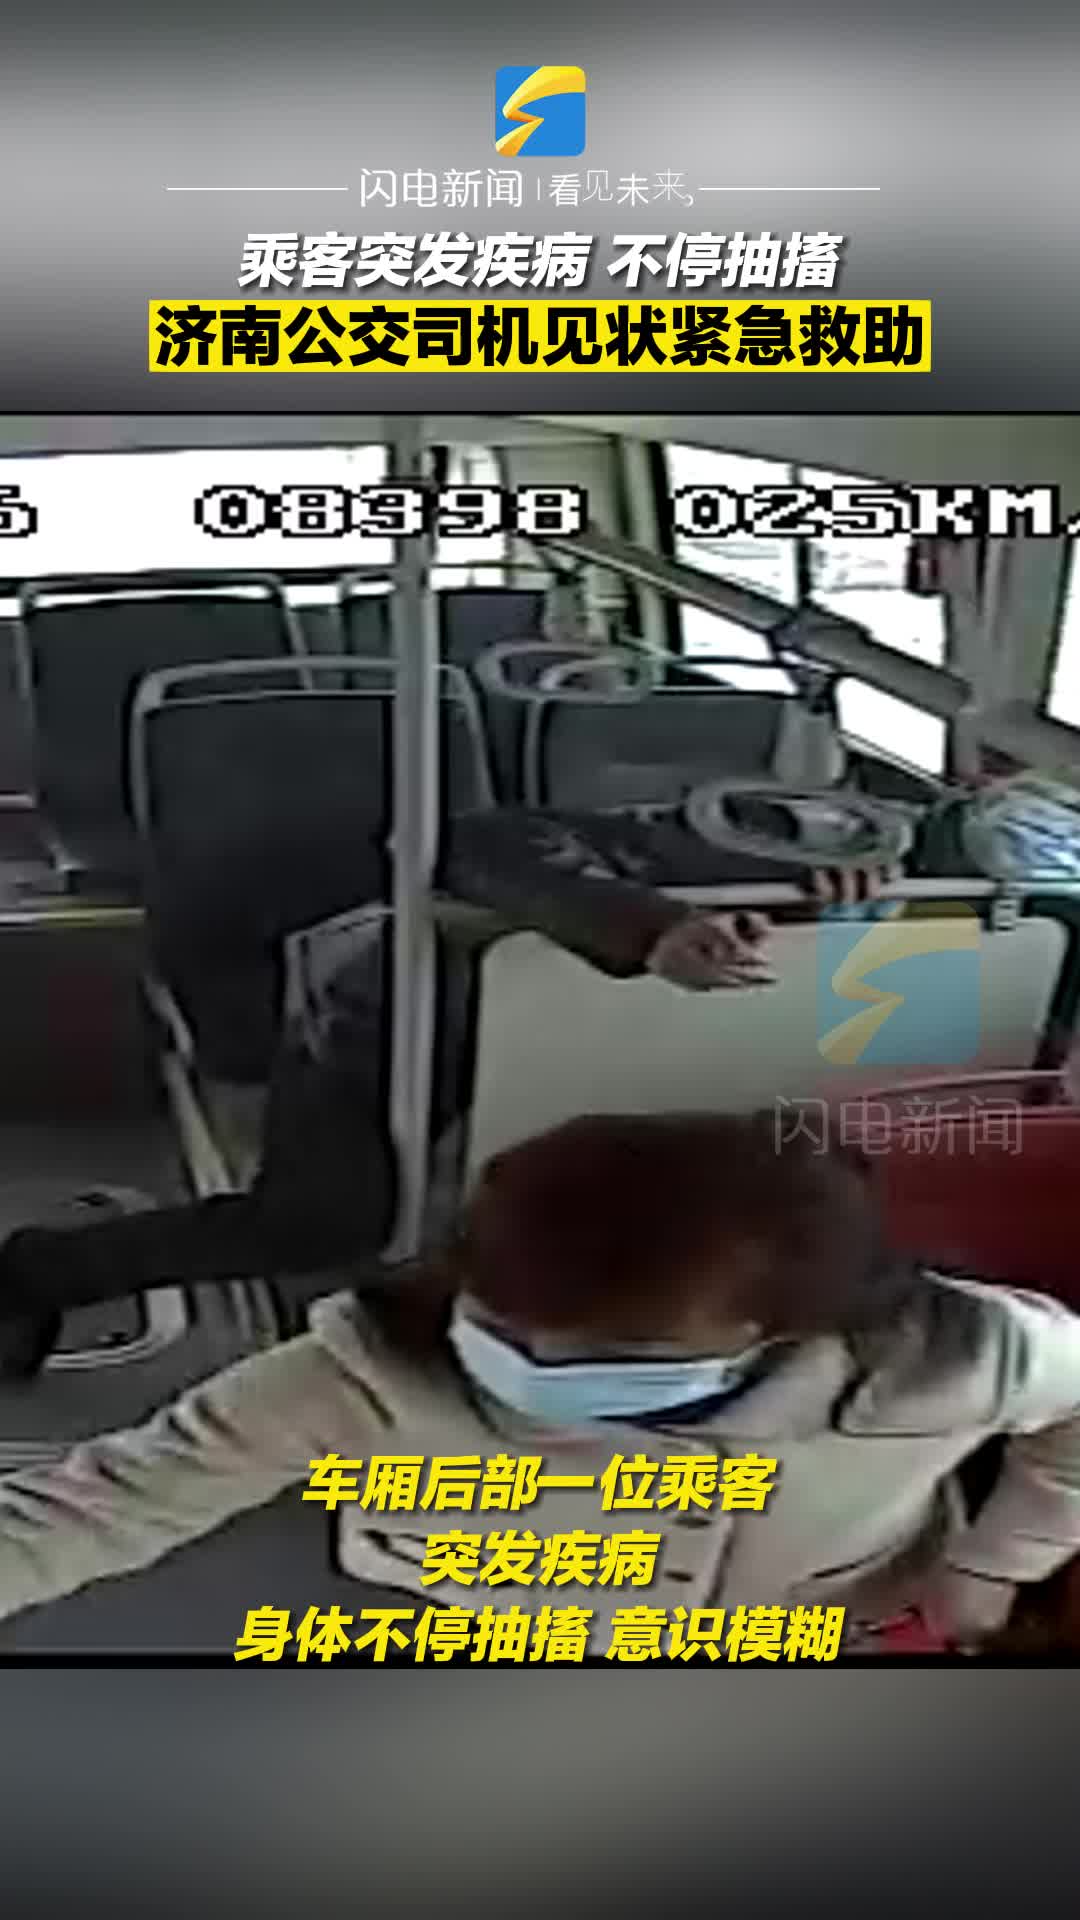 乘客突发疾病不停抽搐 济南公交司机见状紧急救助